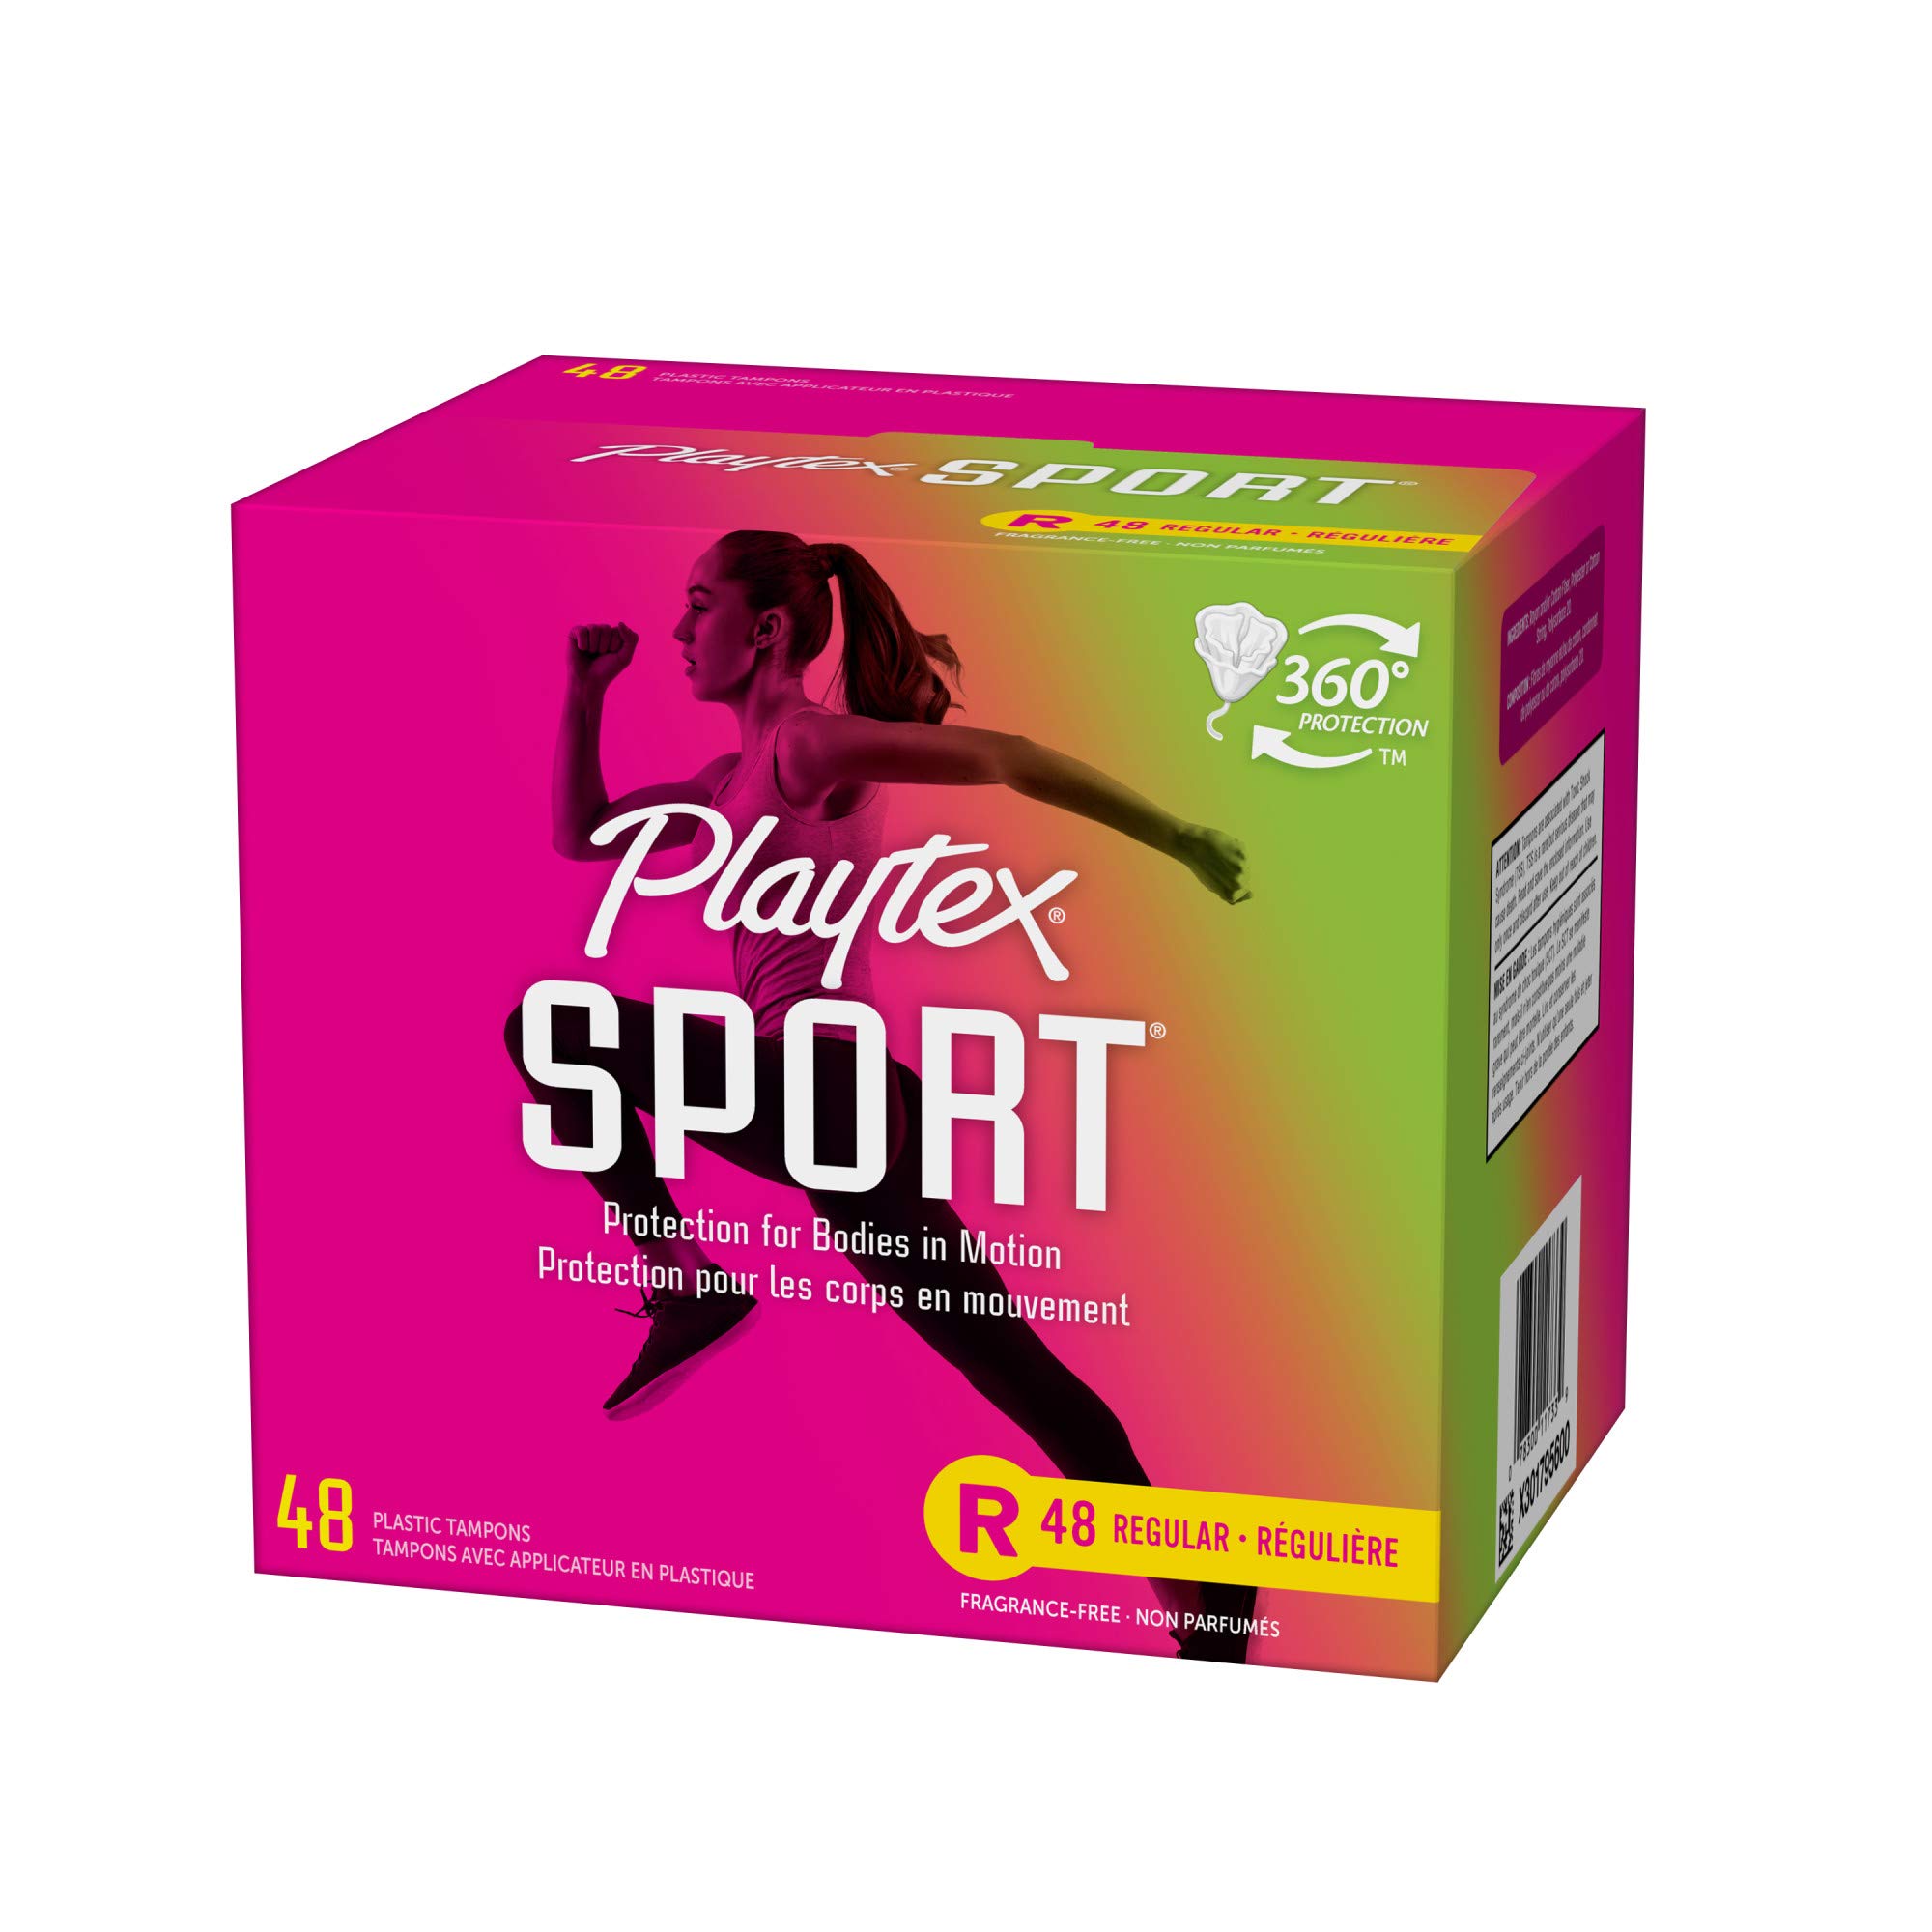 Playtex Sport Tampons, Regular Absorbency, Fragrance-Free - 48ct (Packaging May Vary)